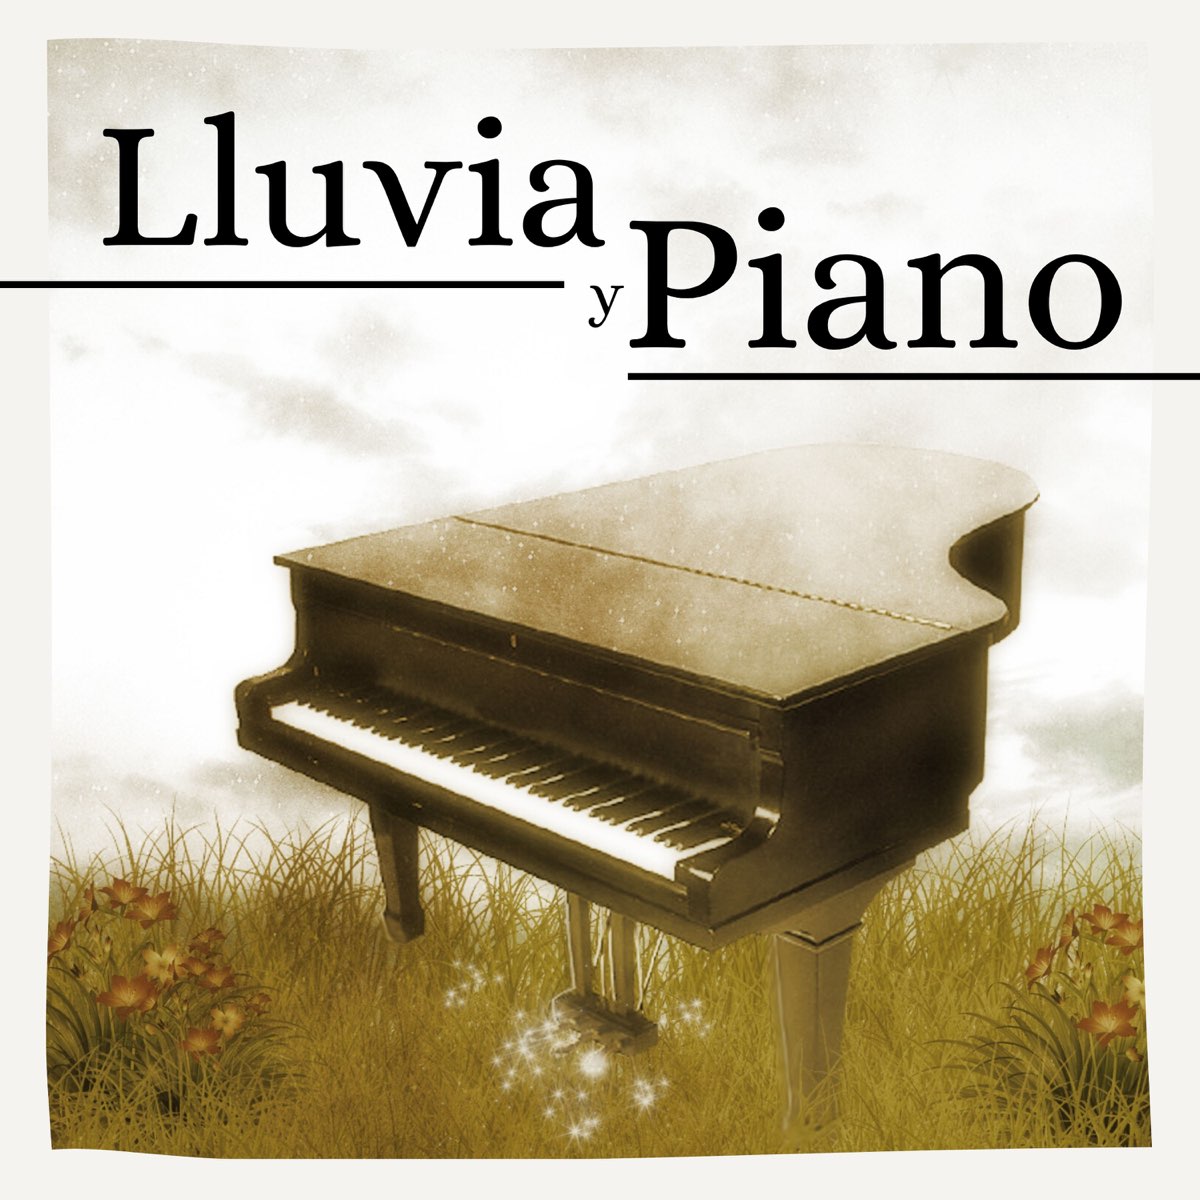 ‎Lluvia y Piano - Música de Piano para Relajarse y Sonidos de Lluvia para  Dormir by Ananda Calma on Apple Music